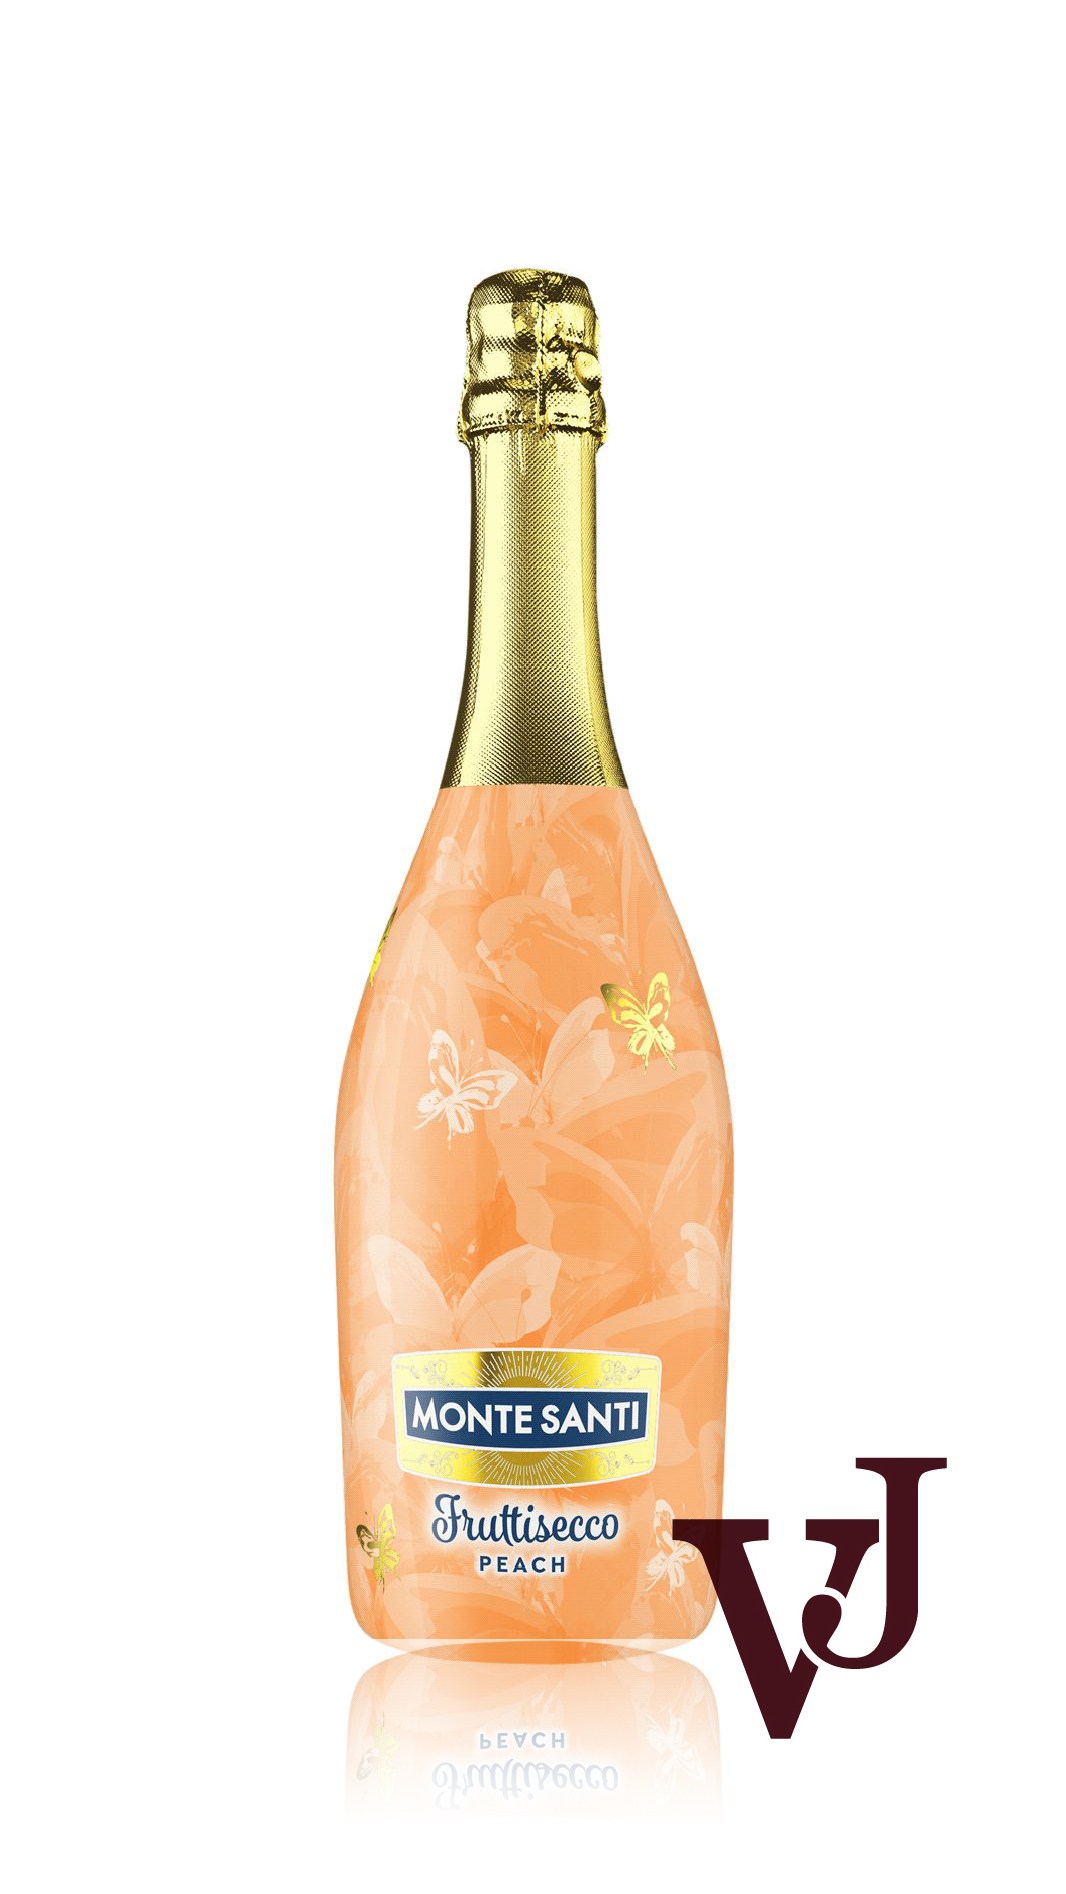 Smaksatt vin & fruktvin - Monte Santi Fruttisecco Peach artikel nummer 5978501 från producenten JNT Group S.A Sp.K från området Polen